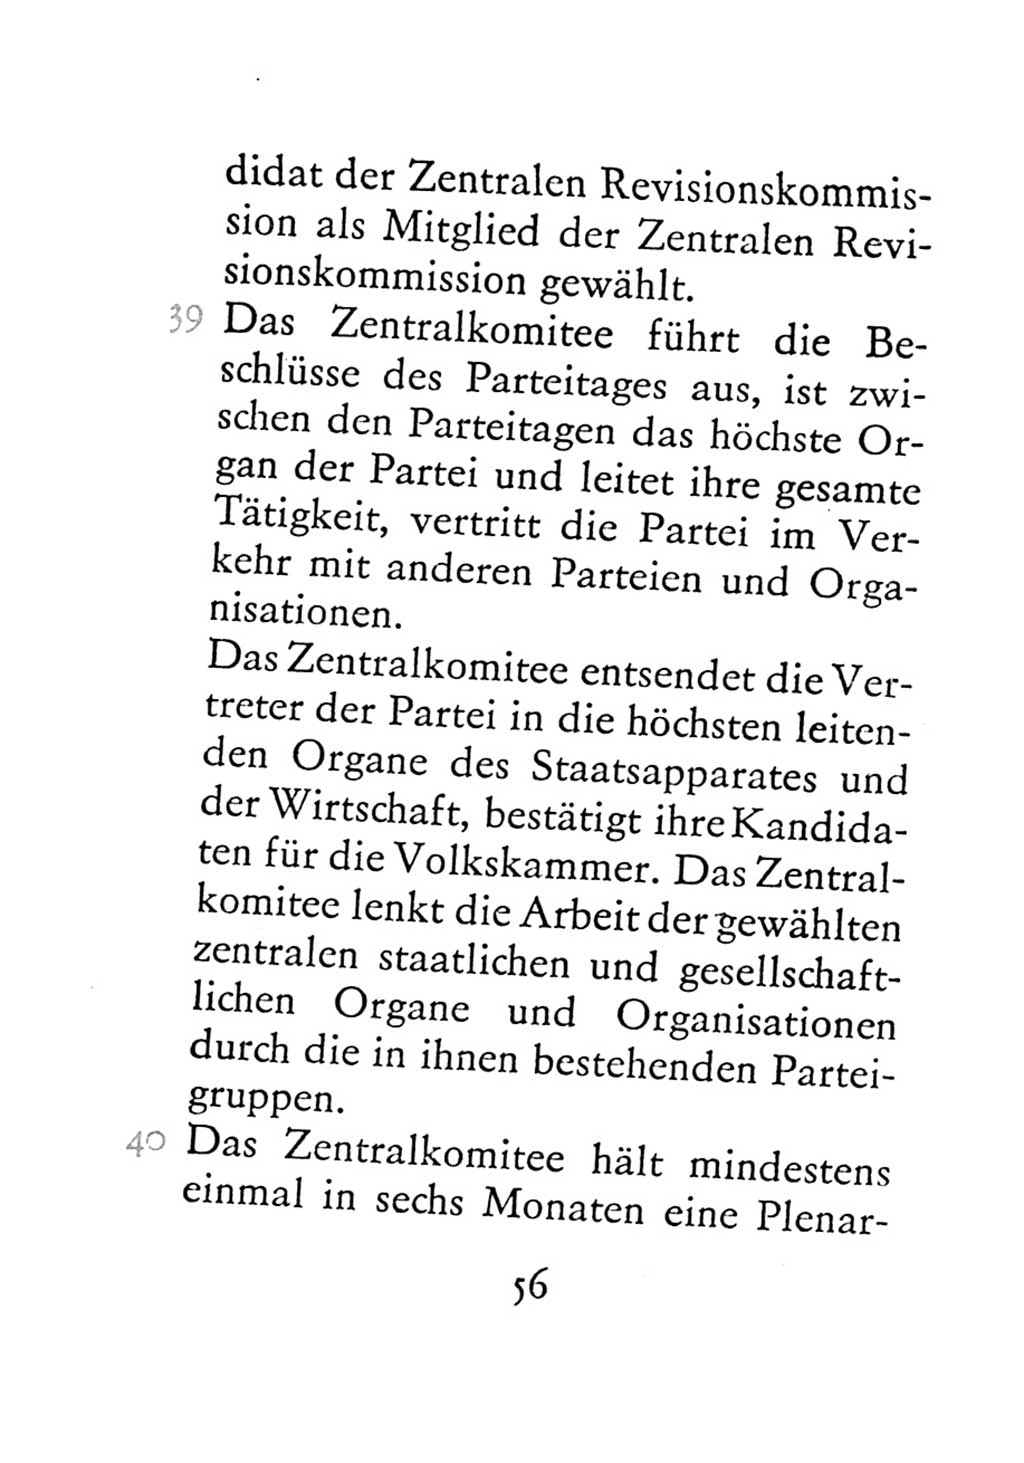 Statut der Sozialistischen Einheitspartei Deutschlands (SED) 1971, Seite 56 (St. SED DDR 1971, S. 56)